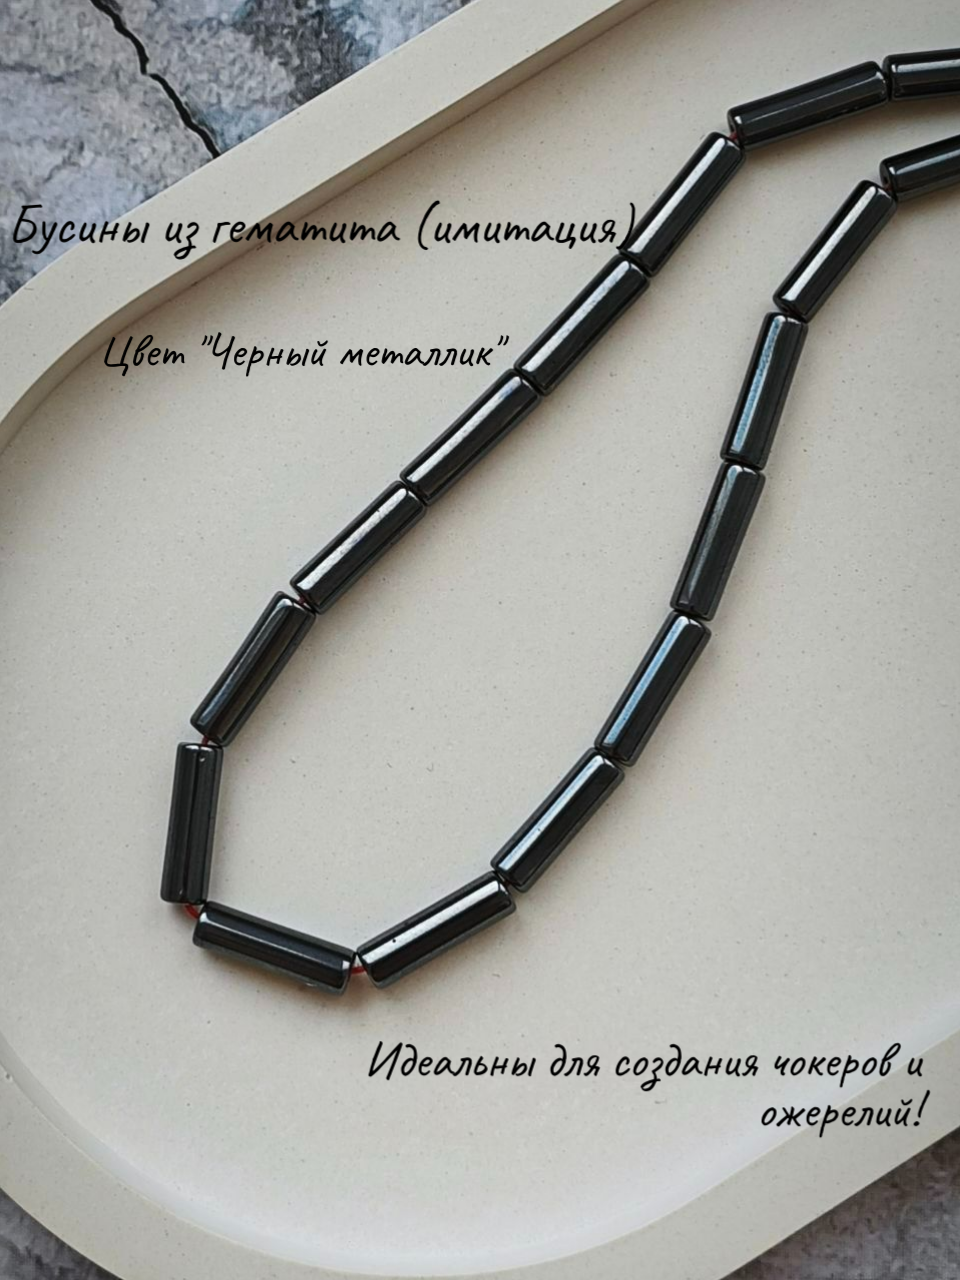 Бусины из гематита (имитация), трубочки, цвет "Черный металлик", р-р 3х12мм, нить 39см